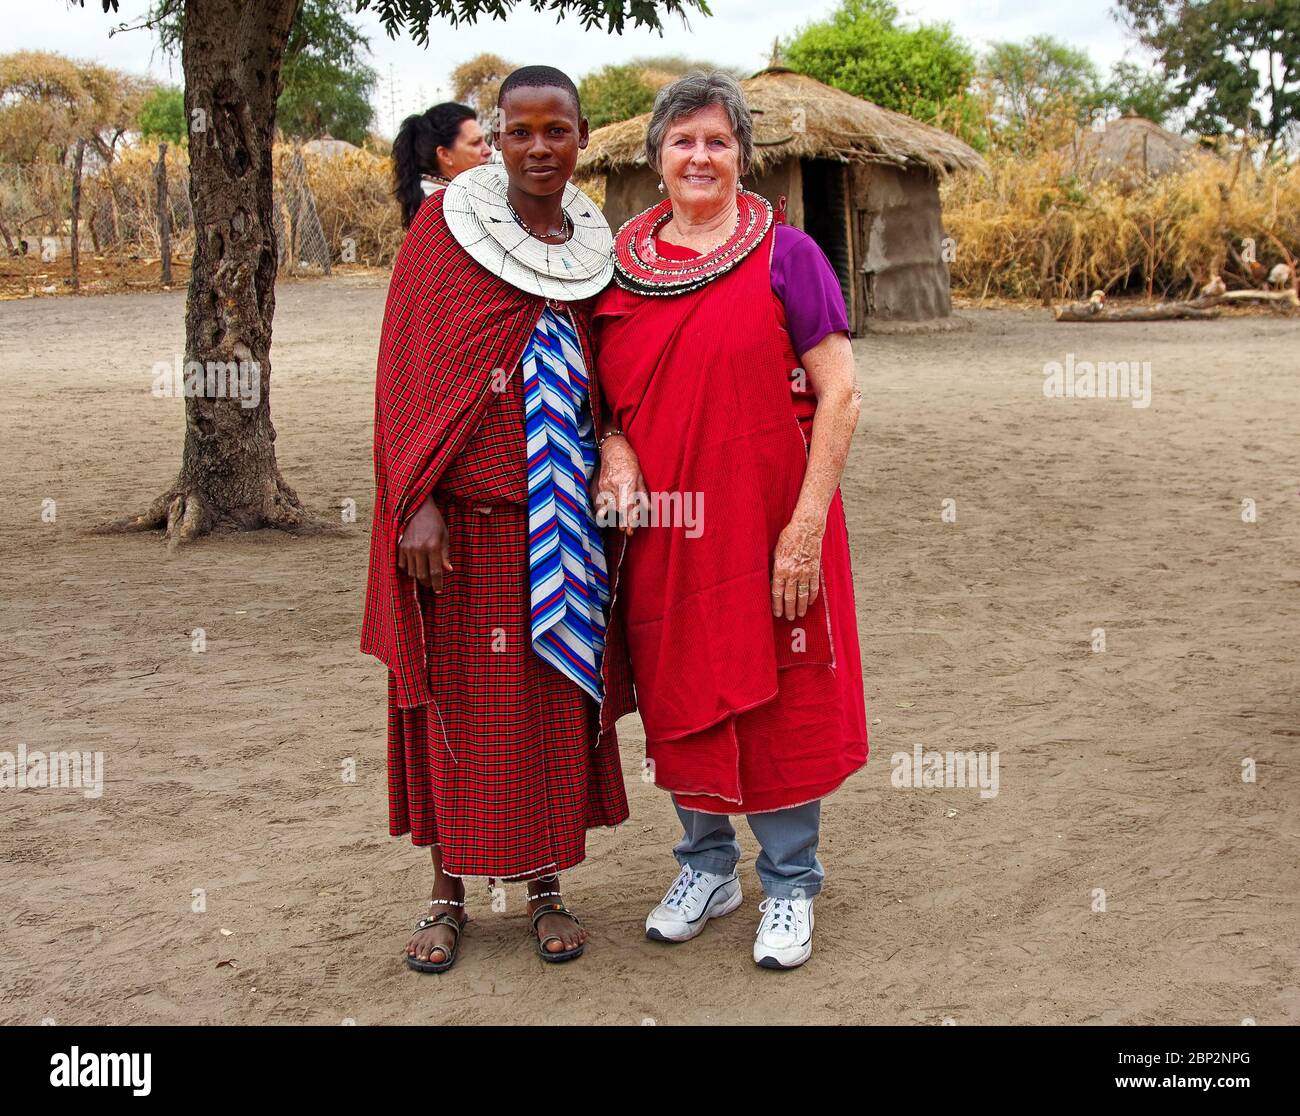 Villaggio Maasai, donna in visita, donna indigena; abito tradizionale, collari con perline a 2 strati, apprendimento, istruzione, Tanzania; Africa, MR Foto Stock